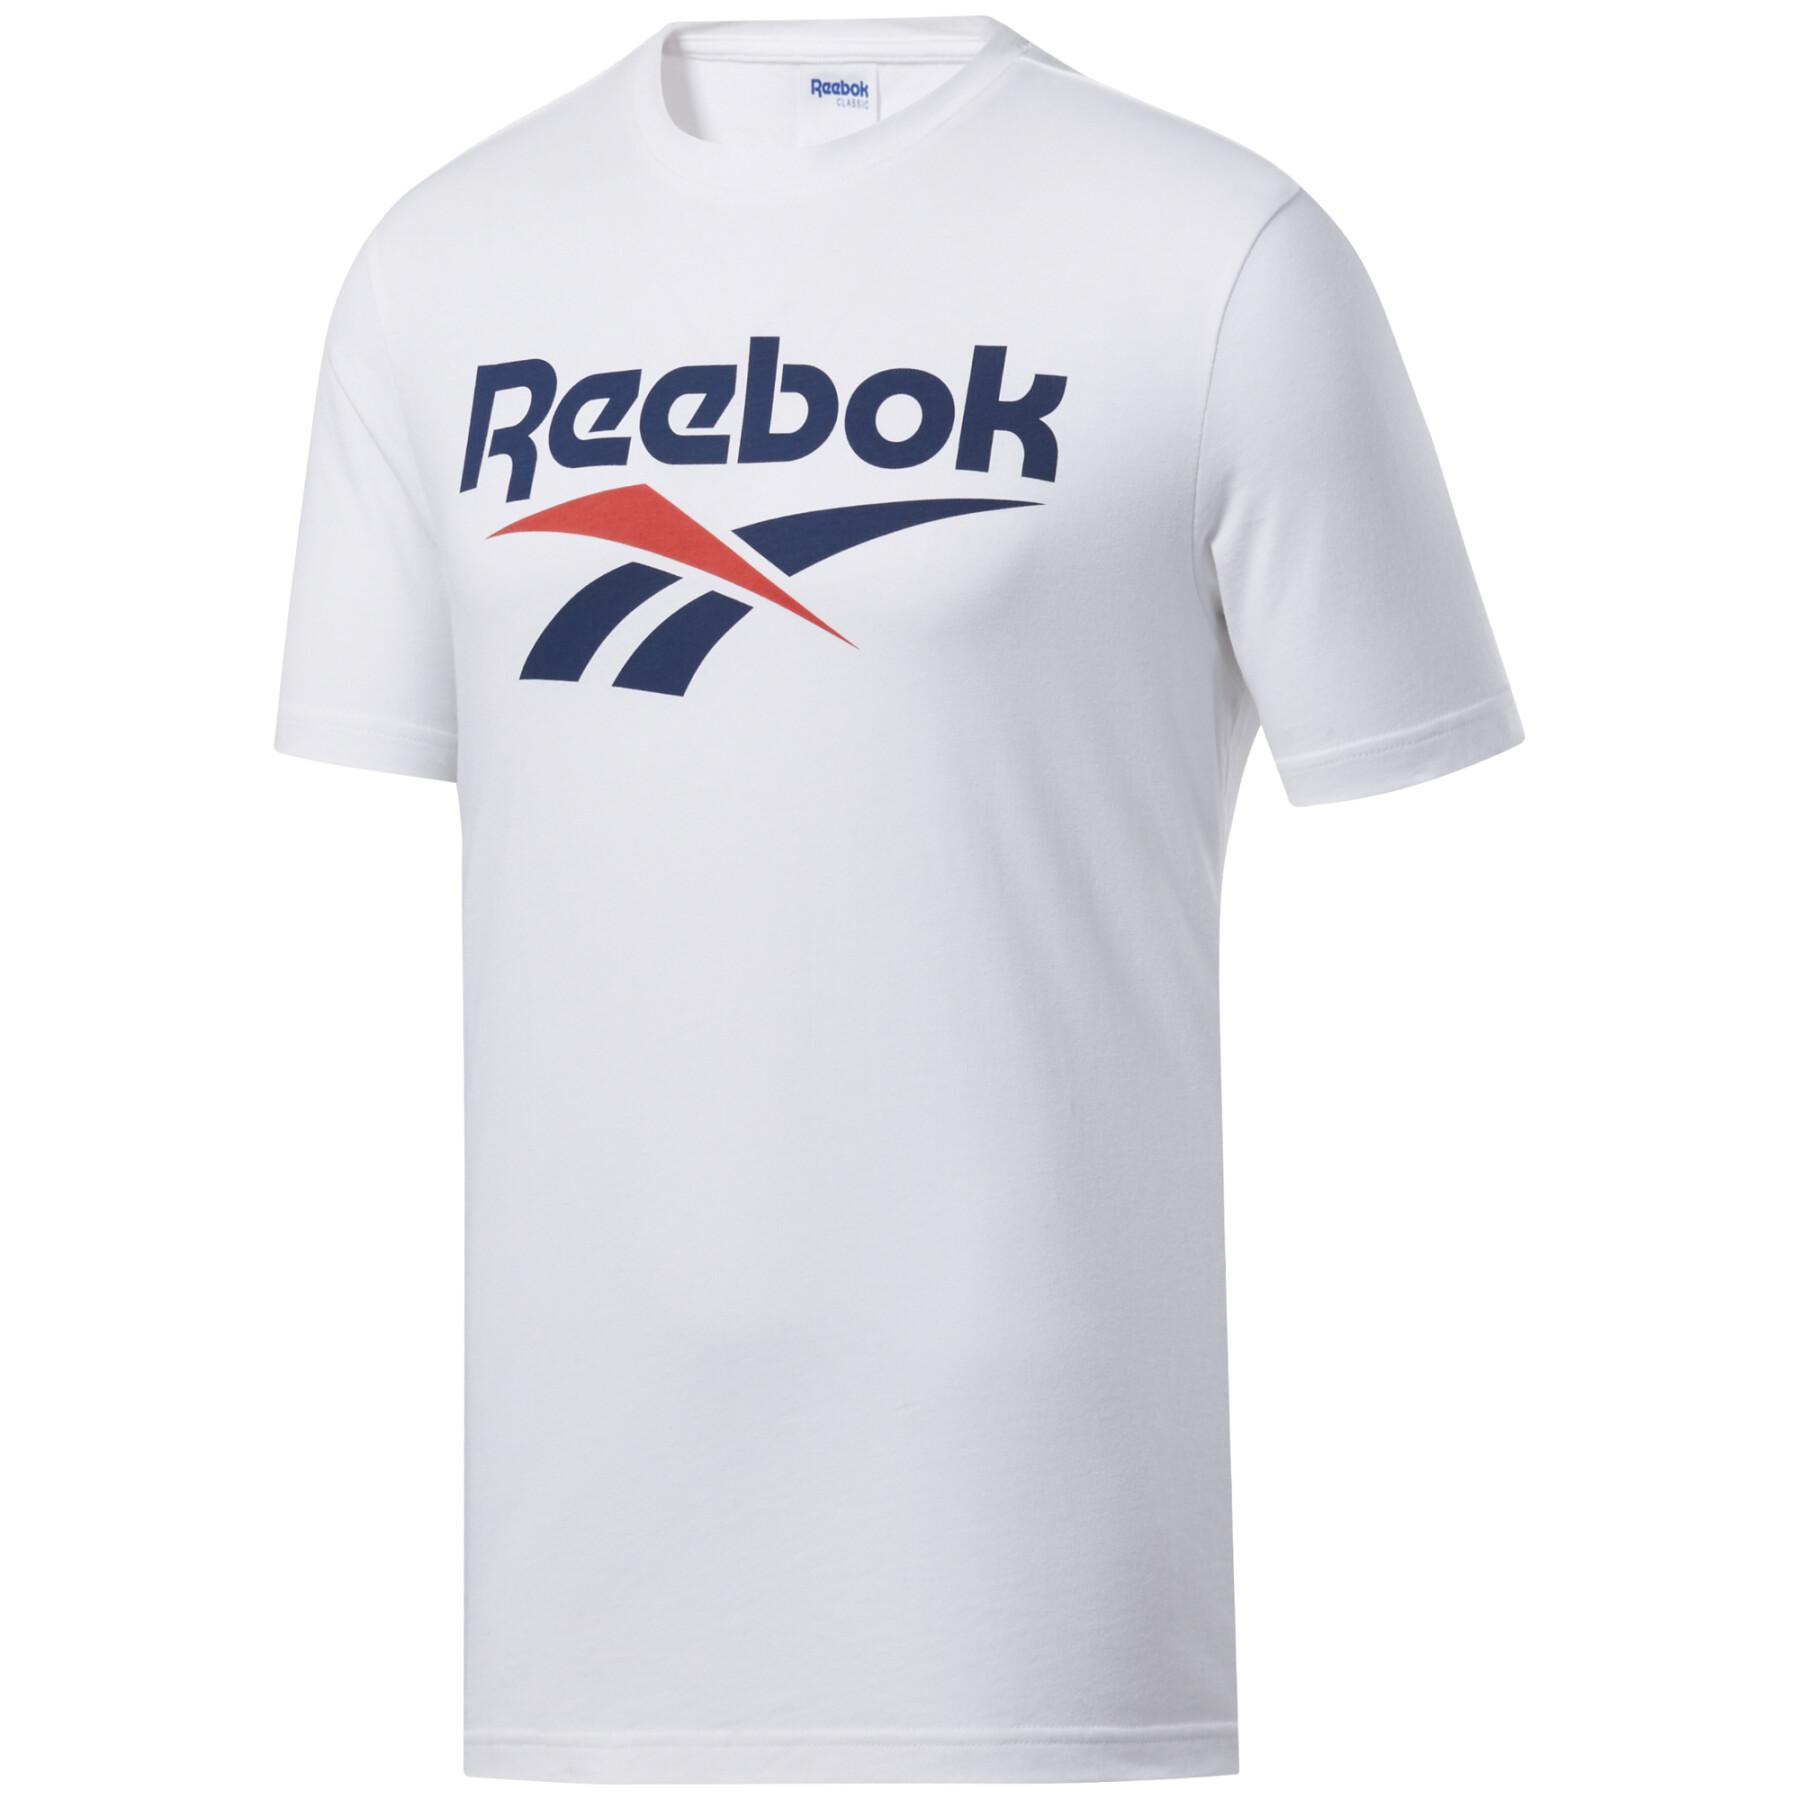 T-shirt Reebok Vector Logo